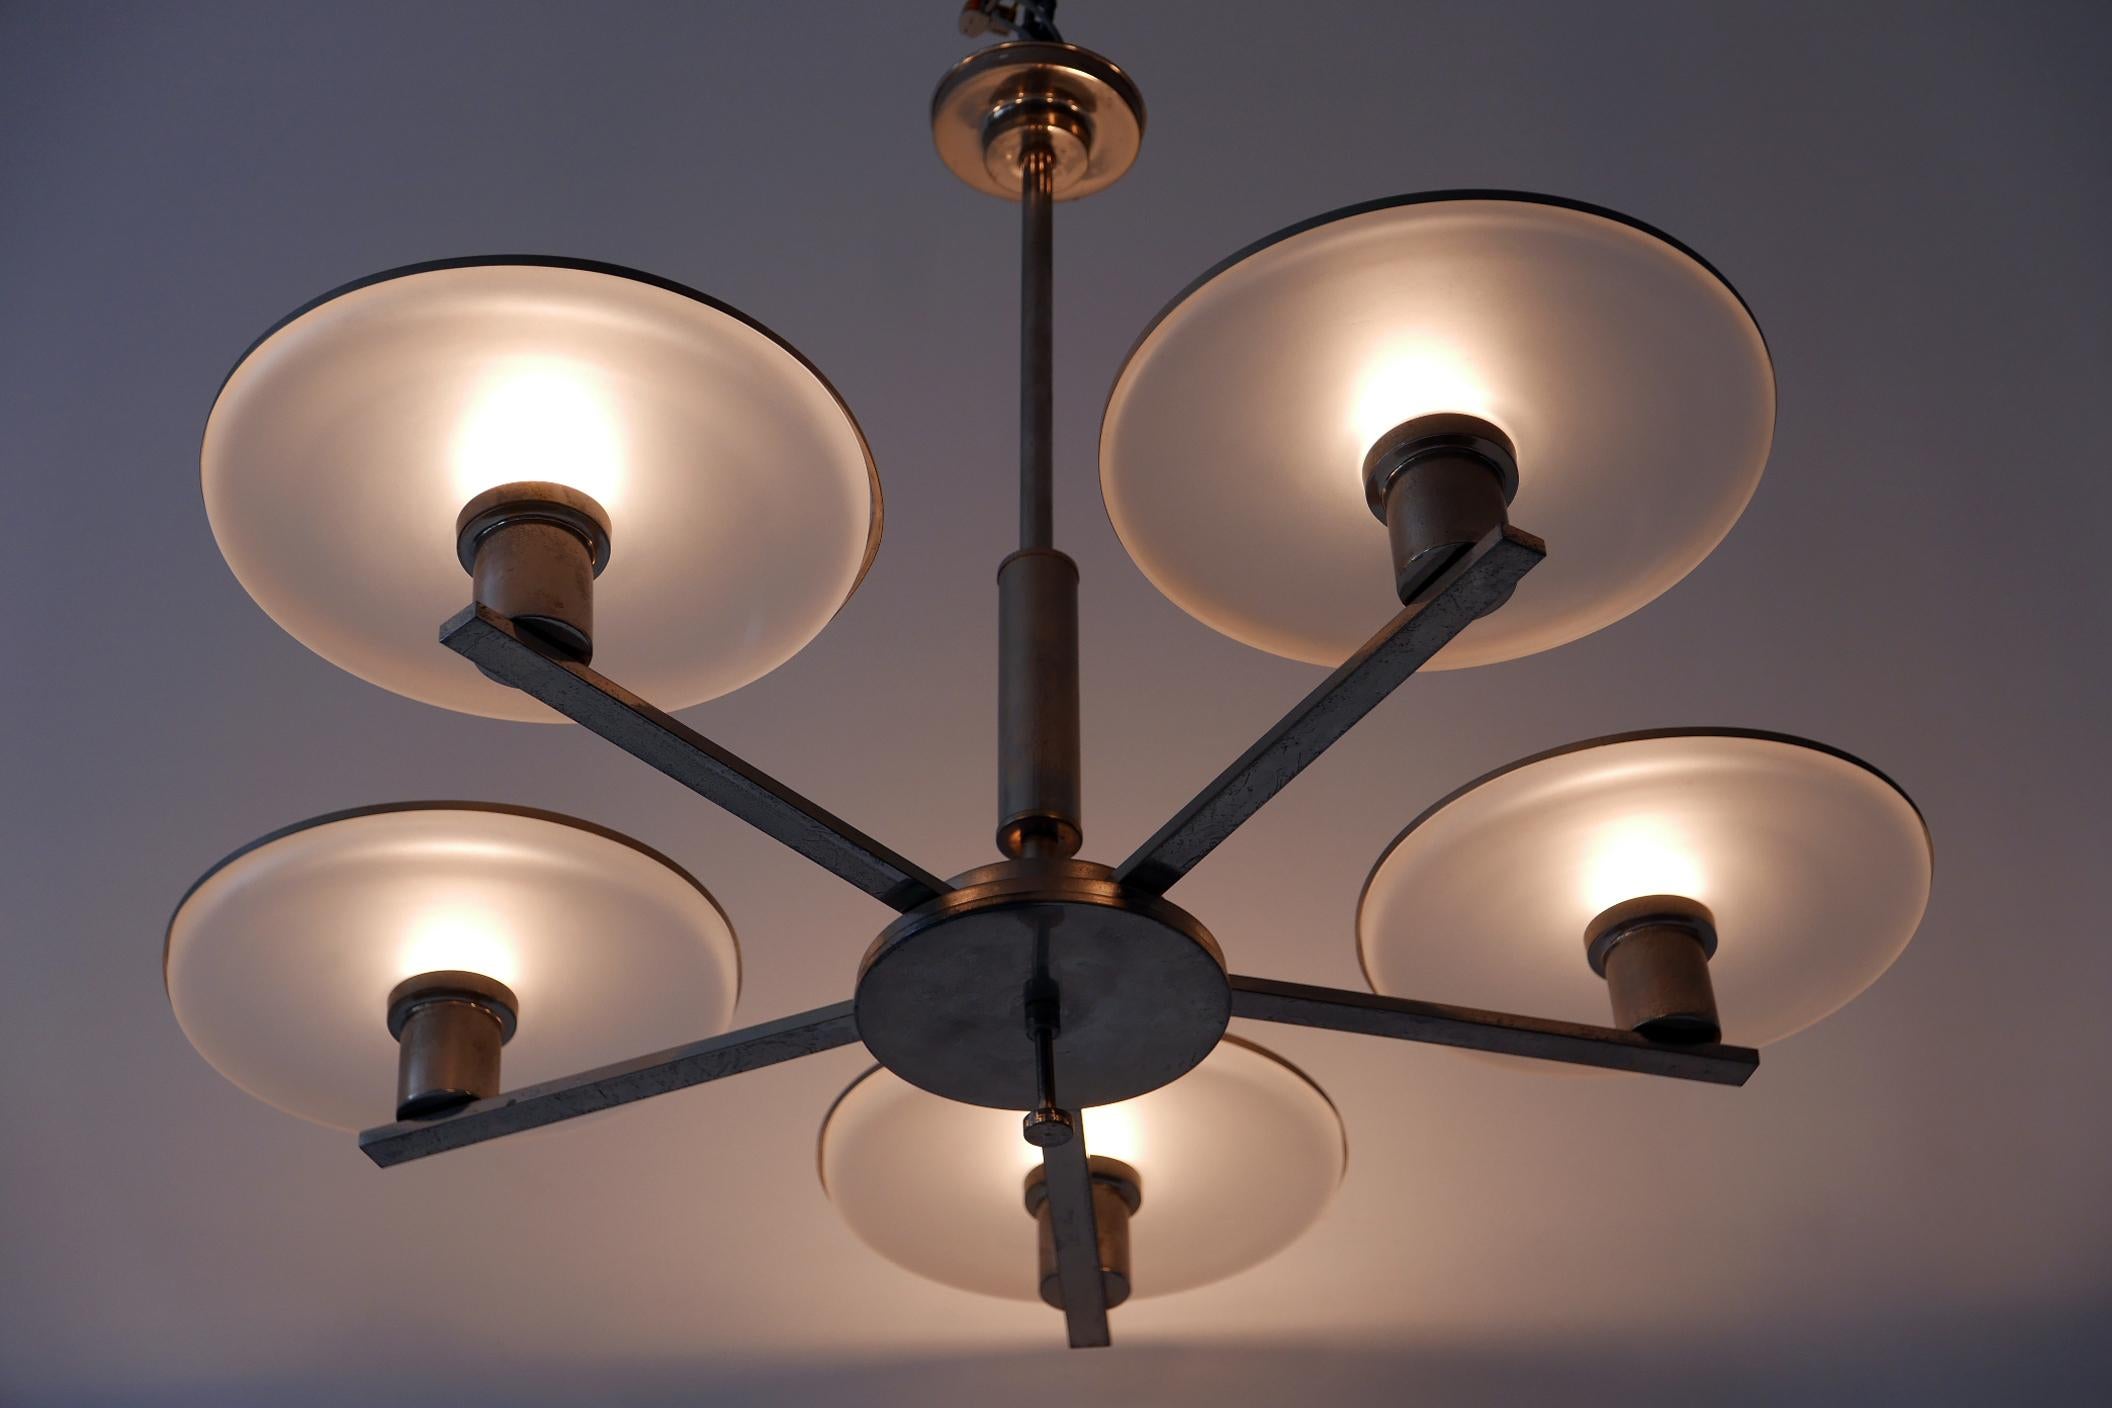 Magnifique et minimaliste lustre / lampe suspendue à cinq bras de style Bauhaus / Art déco. Conçue et fabriquée dans les années 1930, en Allemagne. 

Réalisé en laiton nickelé et en verre, le lustre nécessite 5 ampoules à vis Edison E27 / E26. Il